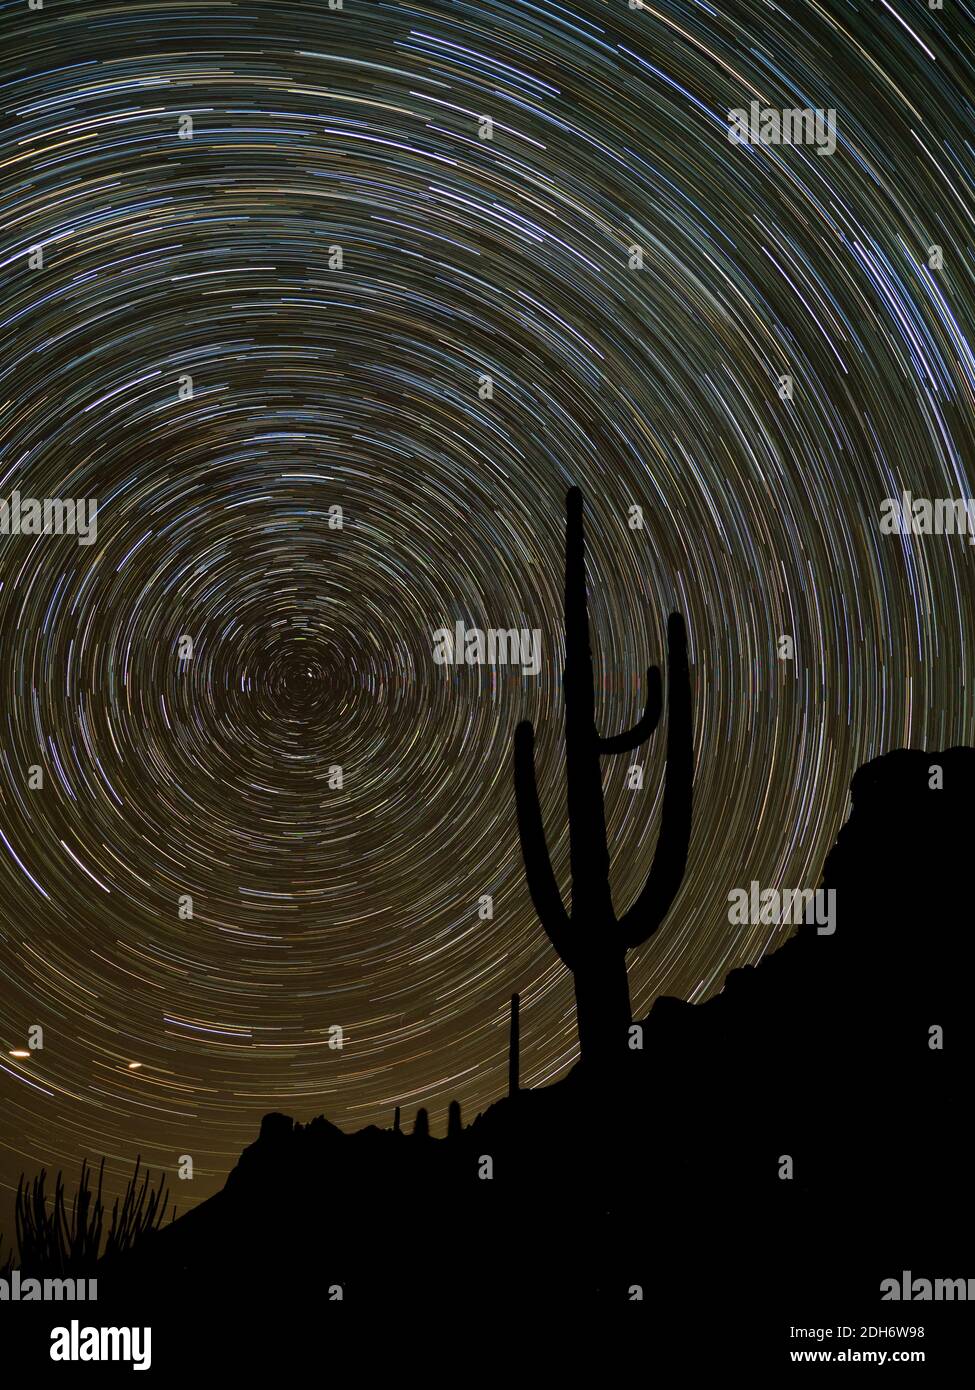 Des sentiers étoiles étonnants dans le ciel nocturne avec un cactus saguaro au monument national Organ Pipe Cactus, Arizona, États-Unis Banque D'Images